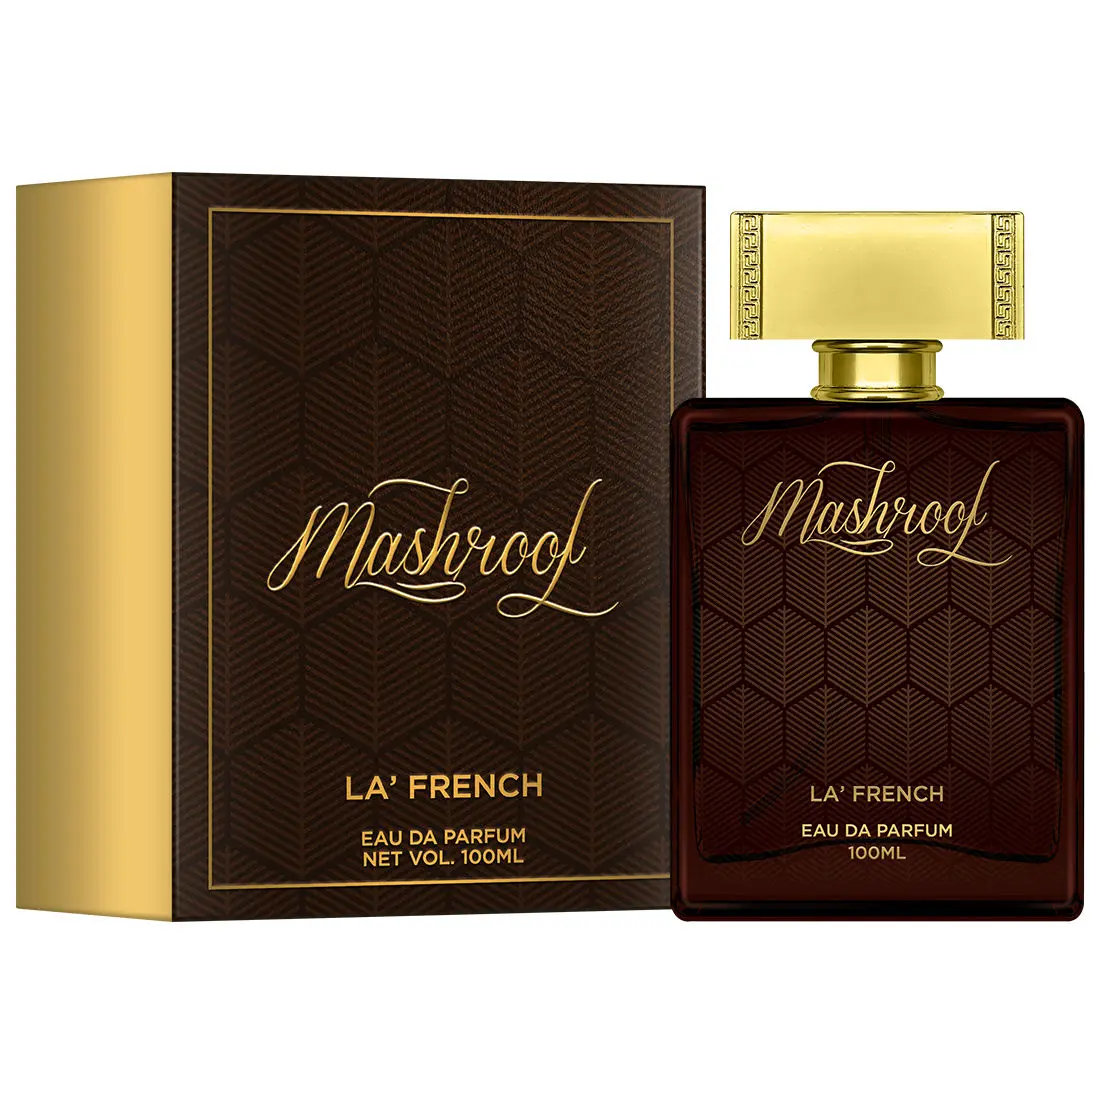 La French Mashroof Eau De Parfum (100 ml)